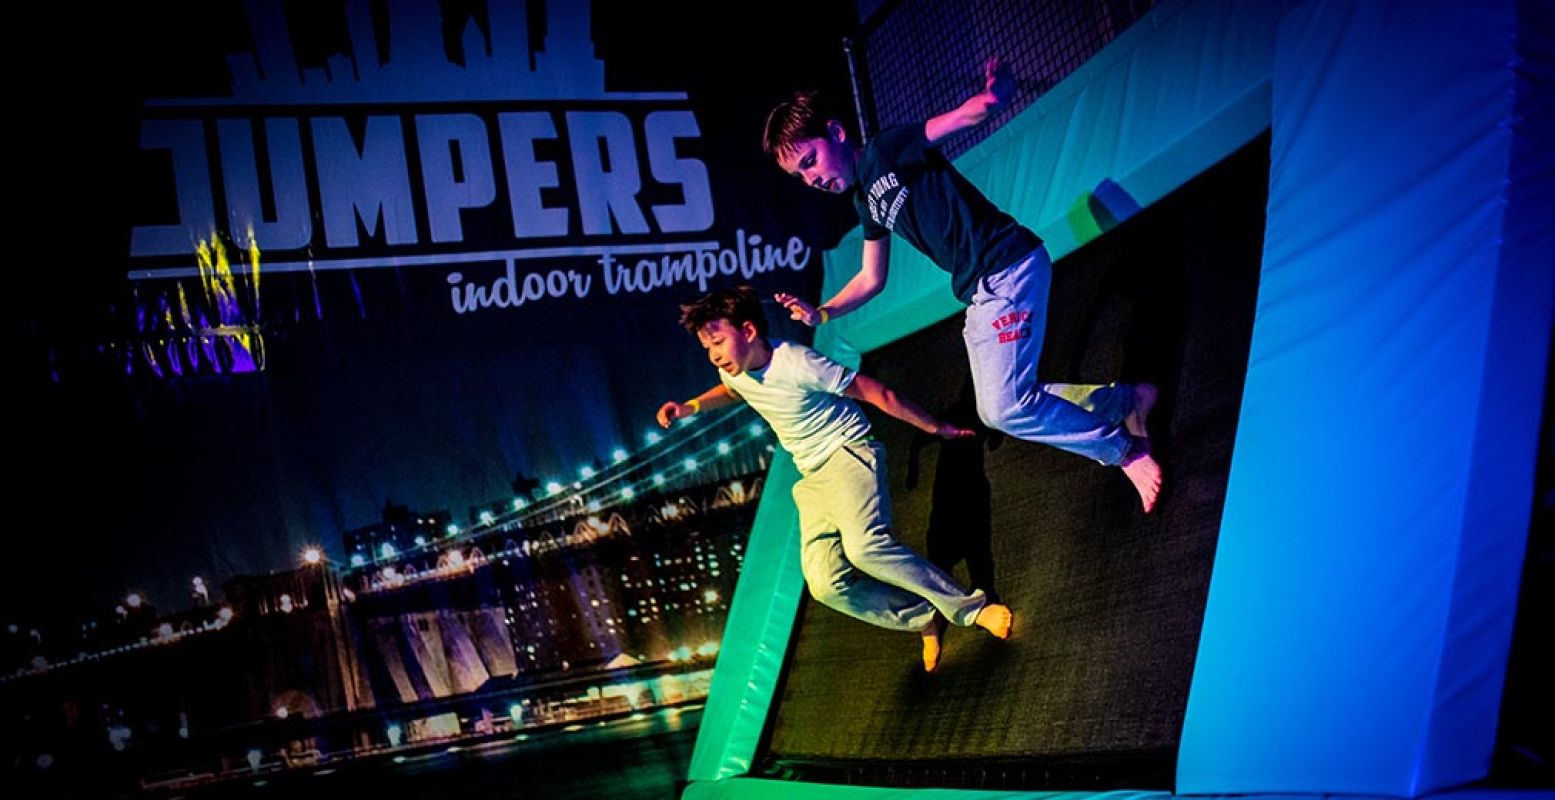 Kom lekker een dagje jumpen in Amstelveen - met korting! Foto: Jumpers Indoor.